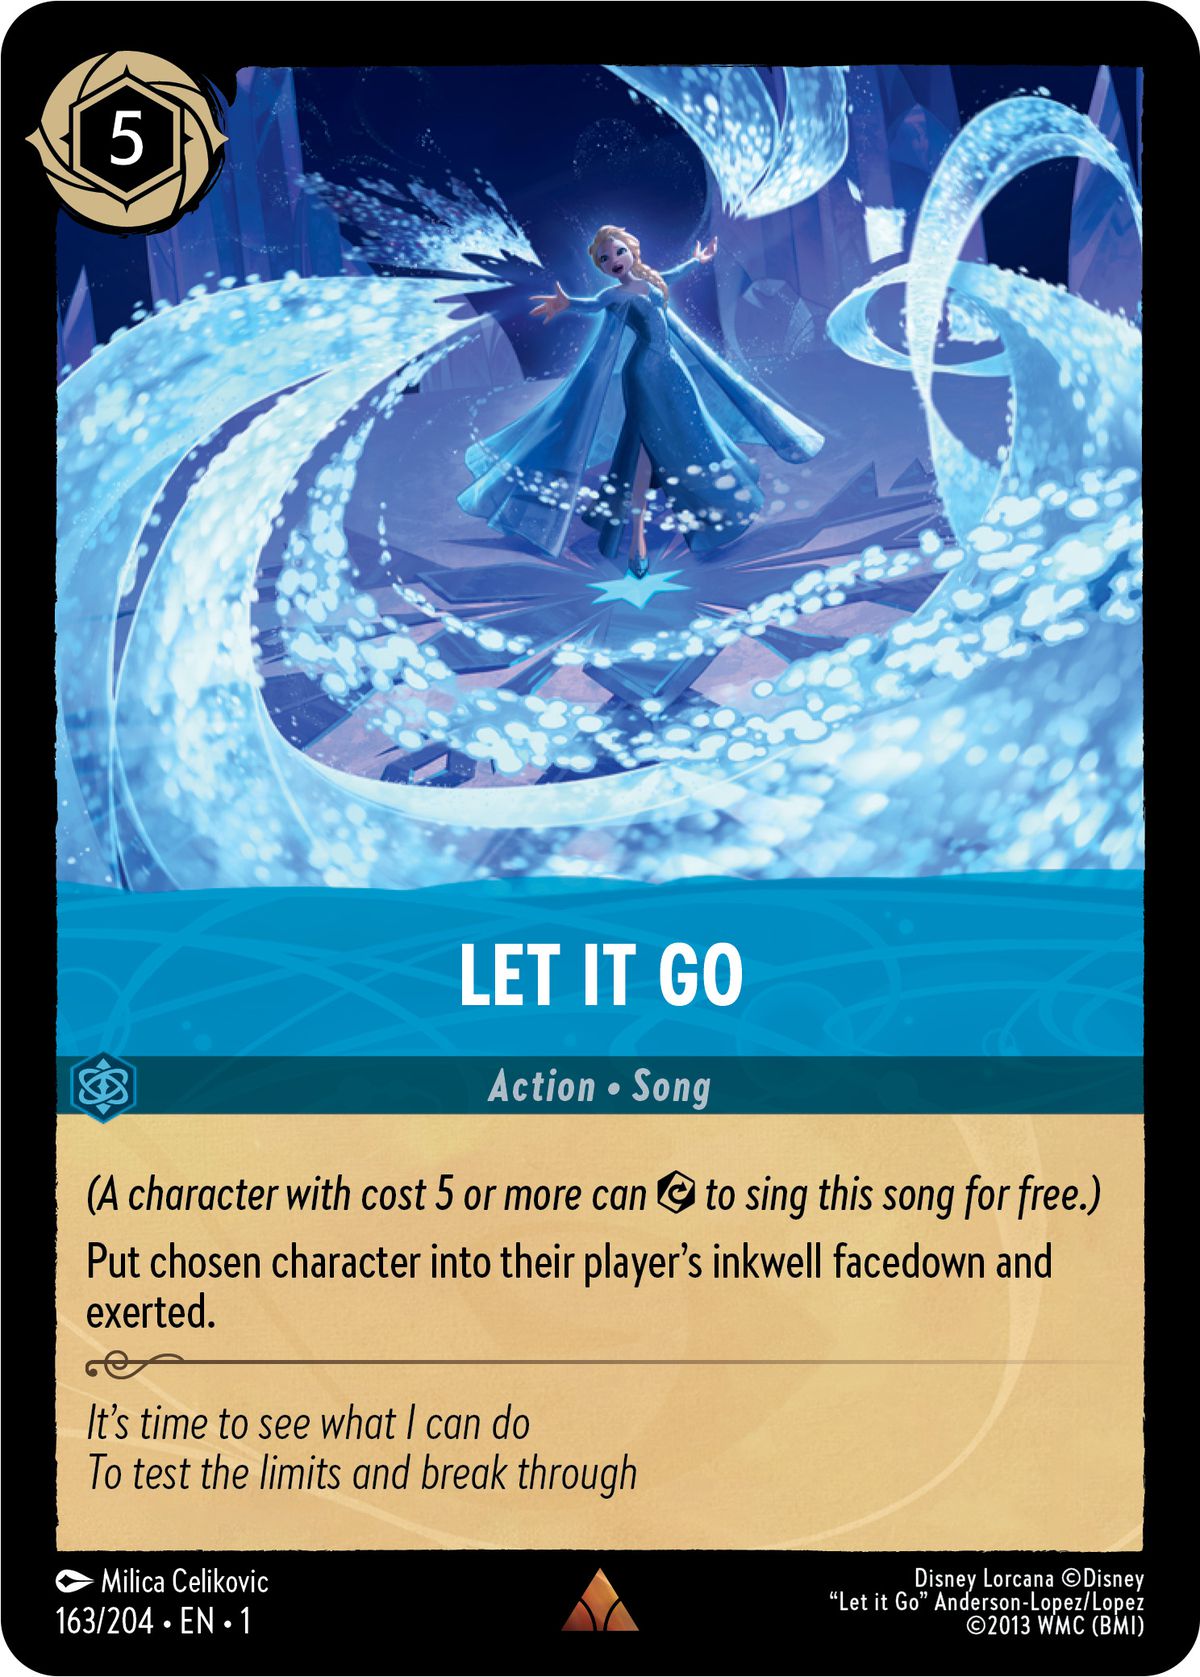 Una canzone lascia andare, una carta d'azione di Disney Lorcana, mostra Elsa che canta e diffonde raggi di ghiaccio dalle sue mani.  